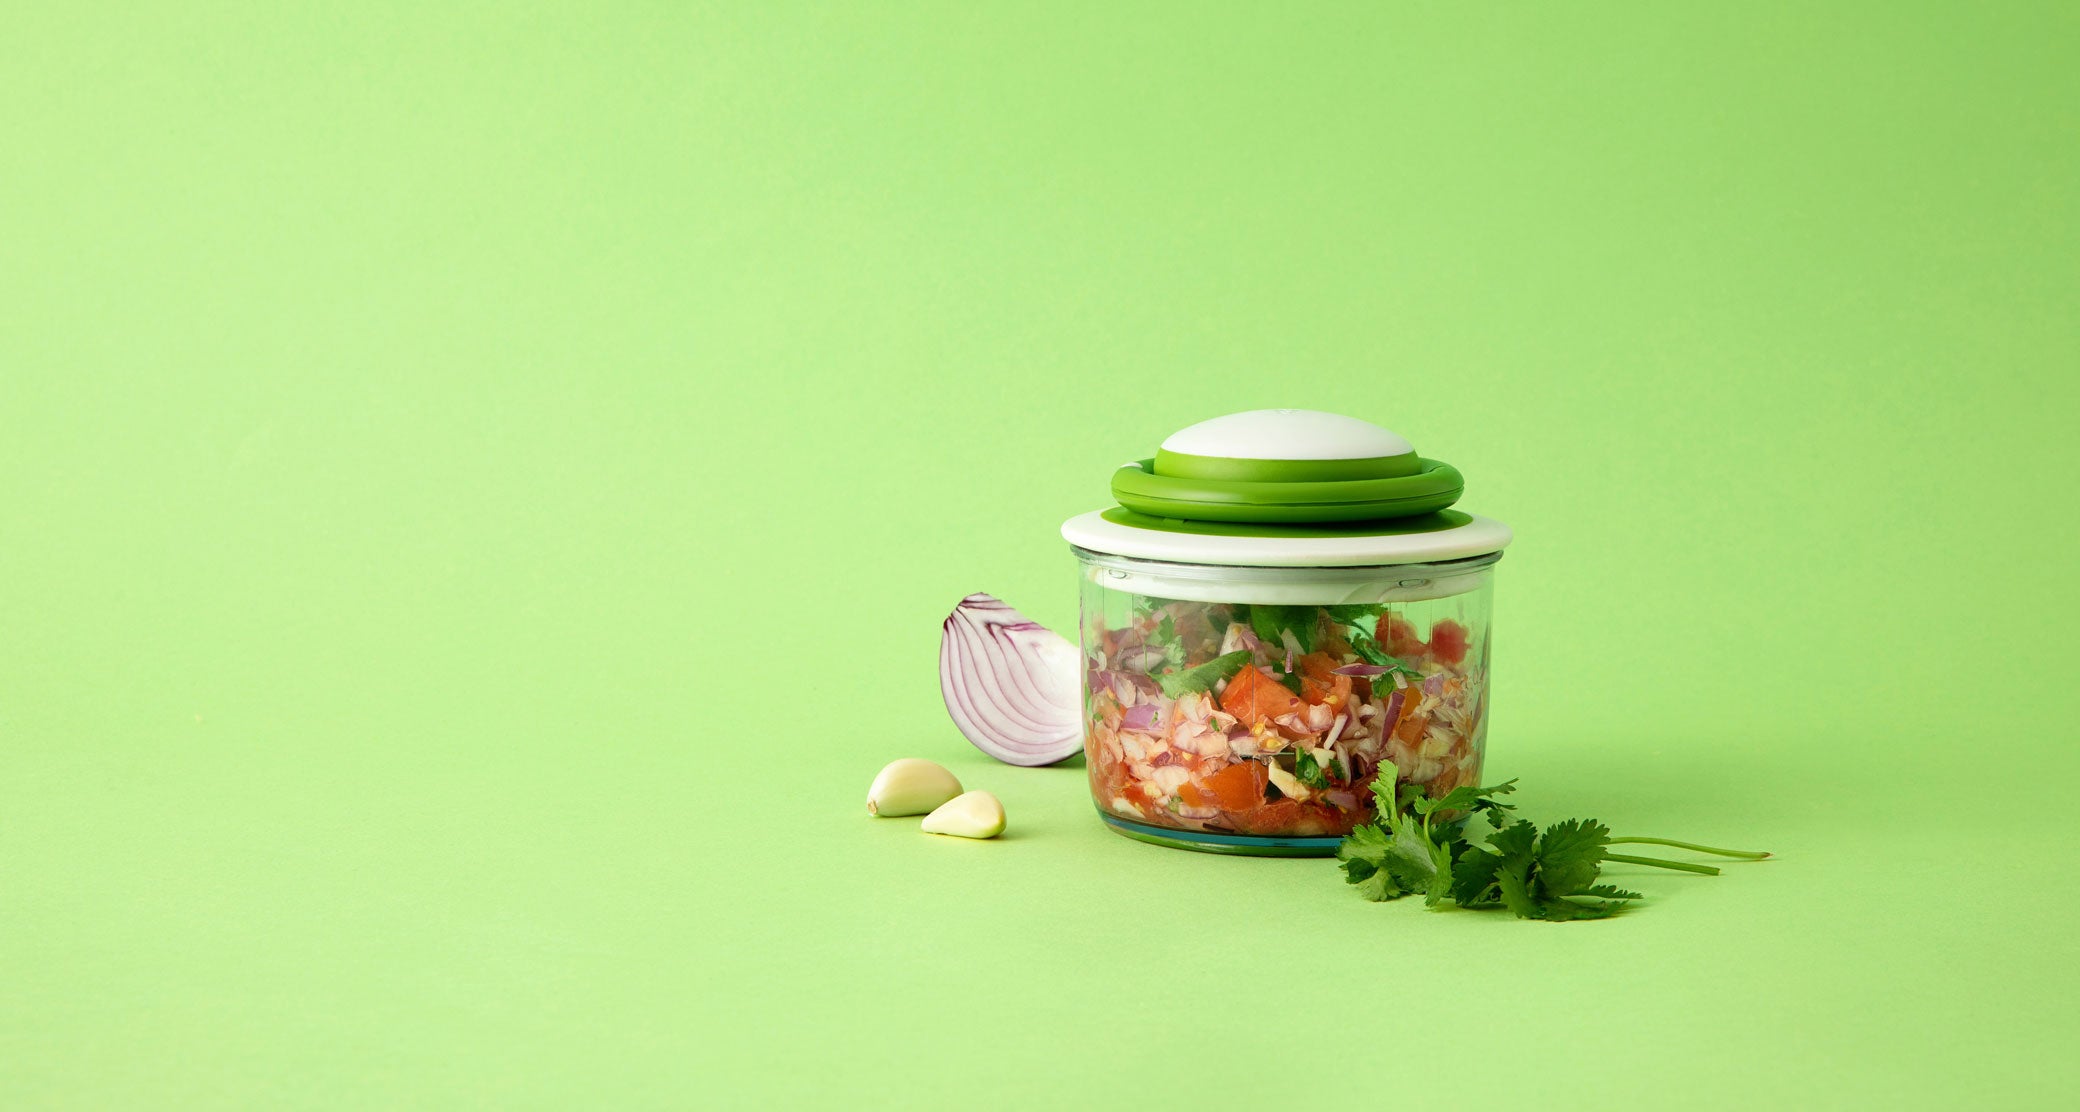  Chef'n 104-259-120 SaladShears Nylon Lettuce Chopper - White: Salad  Chopper: Home & Kitchen